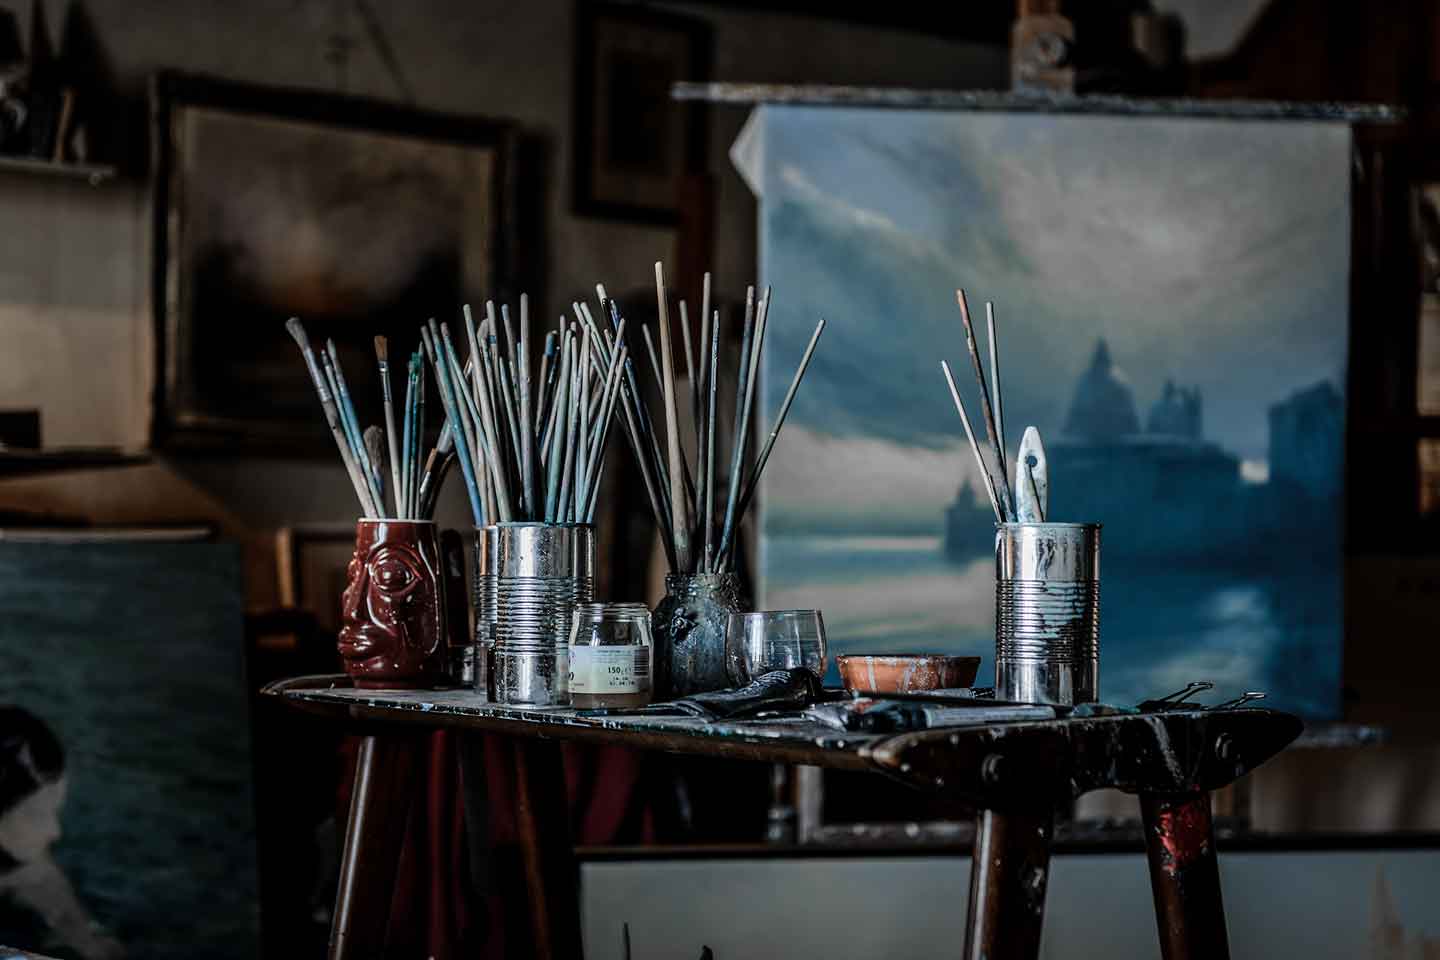 The studio of Davide Battistin